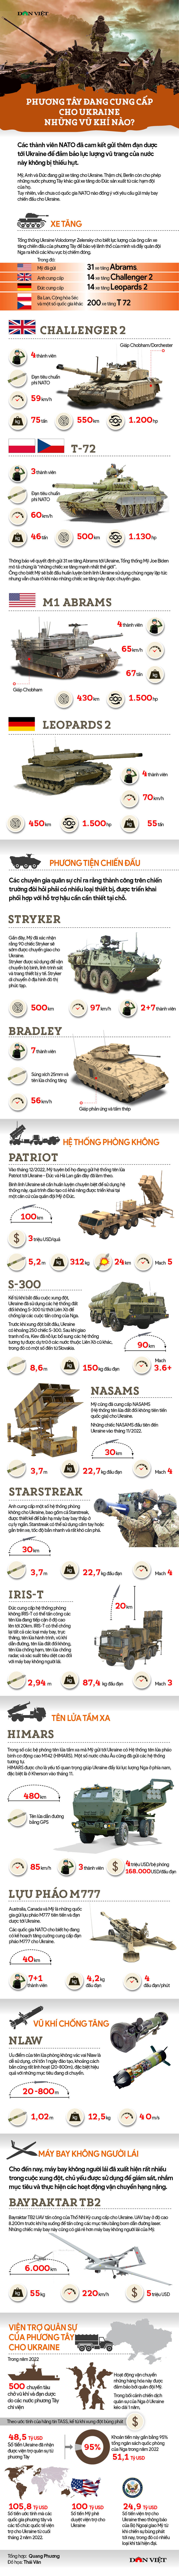 Một năm chiến sự: Phương Tây đang cung cấp cho Ukraine những vũ khí nào? - Ảnh 1.